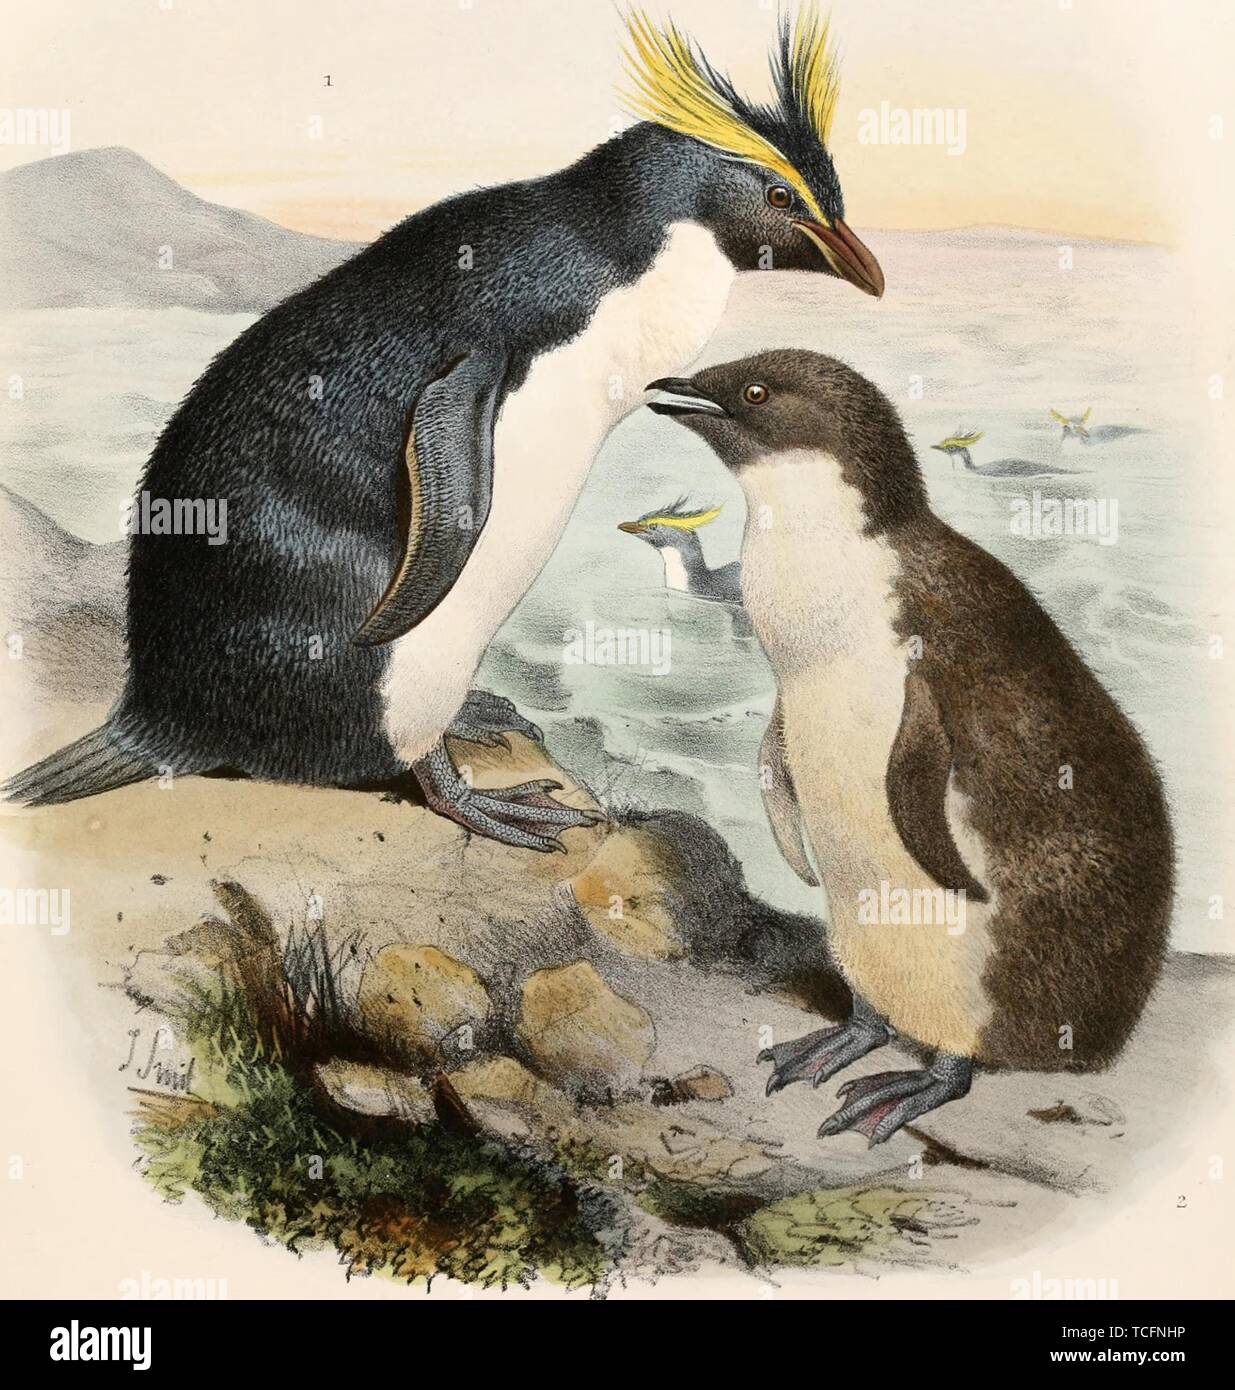 Eingravierte Zeichnung des Südlichen Rockhopper Penguin Group (Eudyptes chrysocome), aus dem Buch "Die Reise von Christopher S, 1881. Challenger" von Charles Wyville Thomson. Mit freundlicher Genehmigung Internet Archive. () Stockfoto